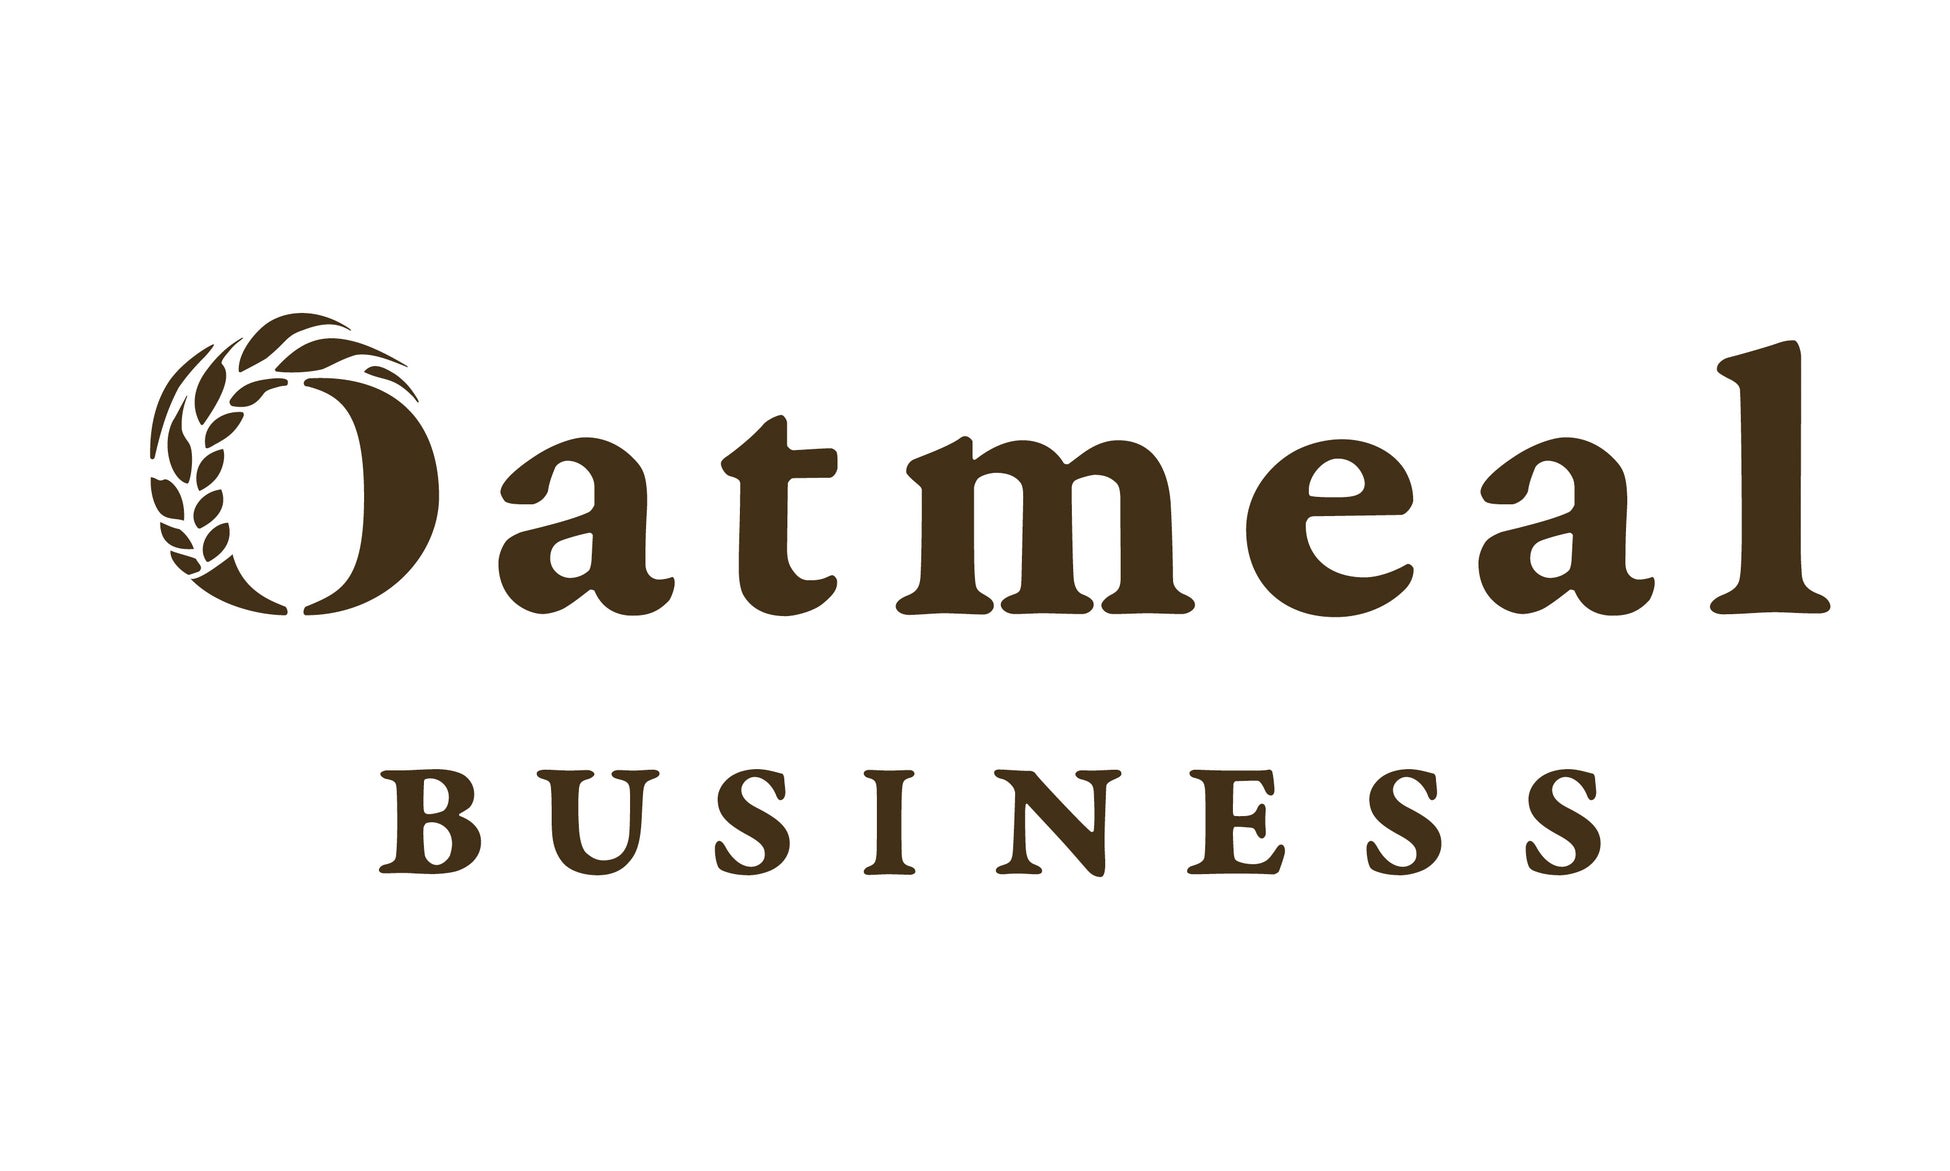 【Oatmeal BUSINESS】創刊！成長分野「オートミール」に関わるすべてのビジネスパーソンへ、成功のヒントとアイデアを提供し、新しいオートミール市場の未来を切り拓くビジネスメディアが始動。